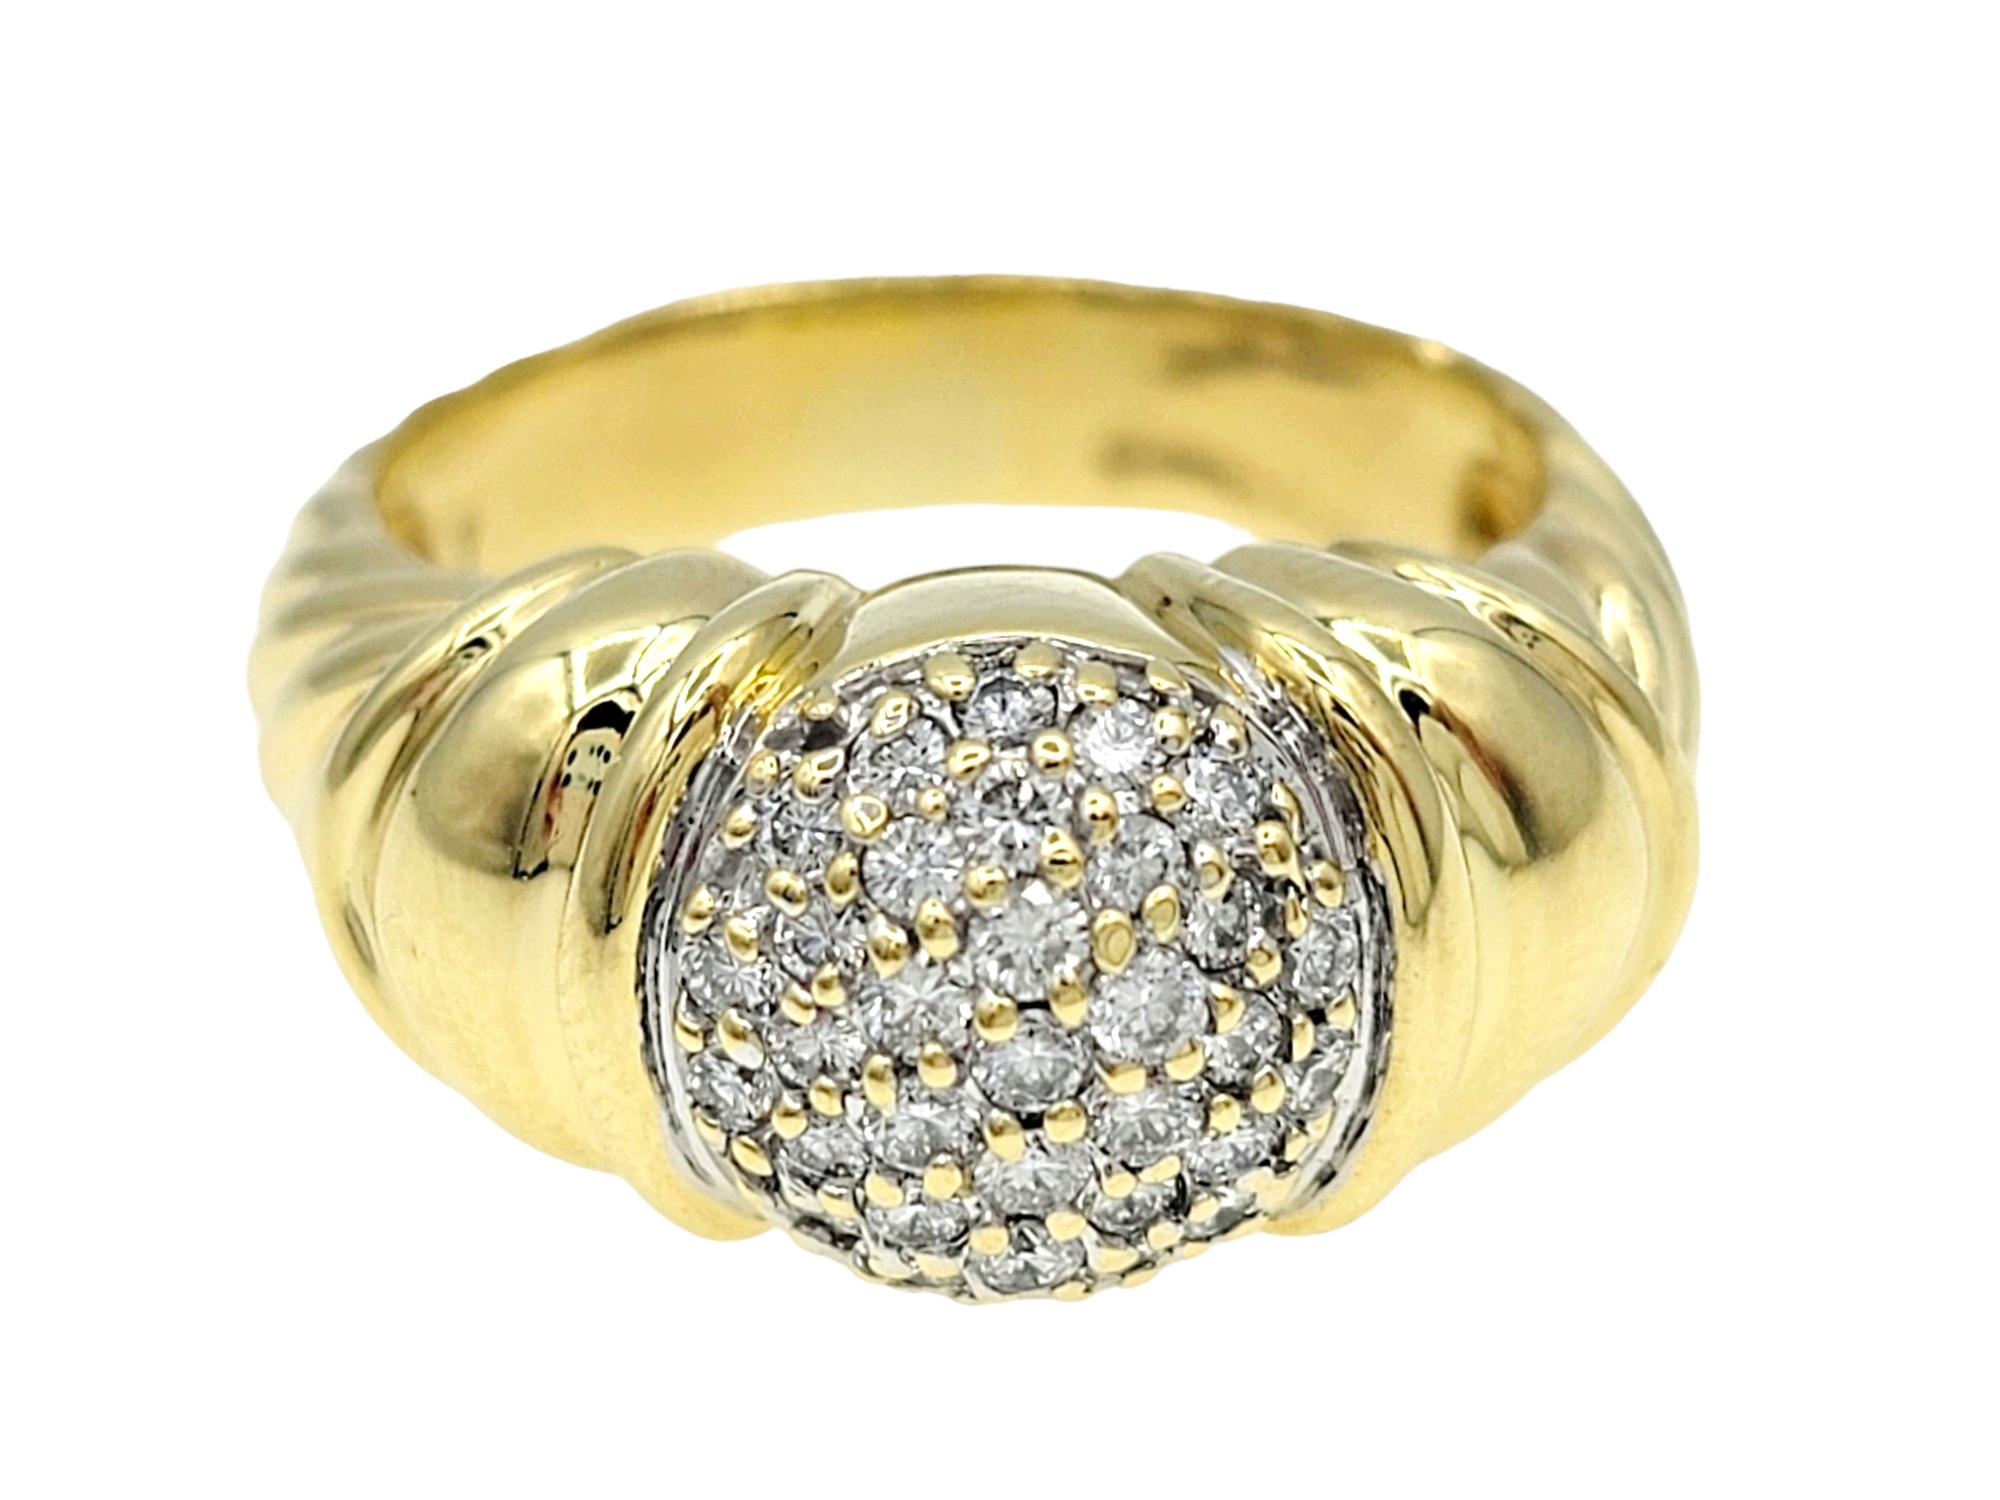 Ringgröße: 7

Der David Yurman Capri Cable Ring aus 18 Karat Gelbgold ist ein atemberaubendes Schmuckstück, das klassische Eleganz mit markanten Designelementen verbindet. In der Mitte des Rings befindet sich ein Kreis, der mit gepflasterten